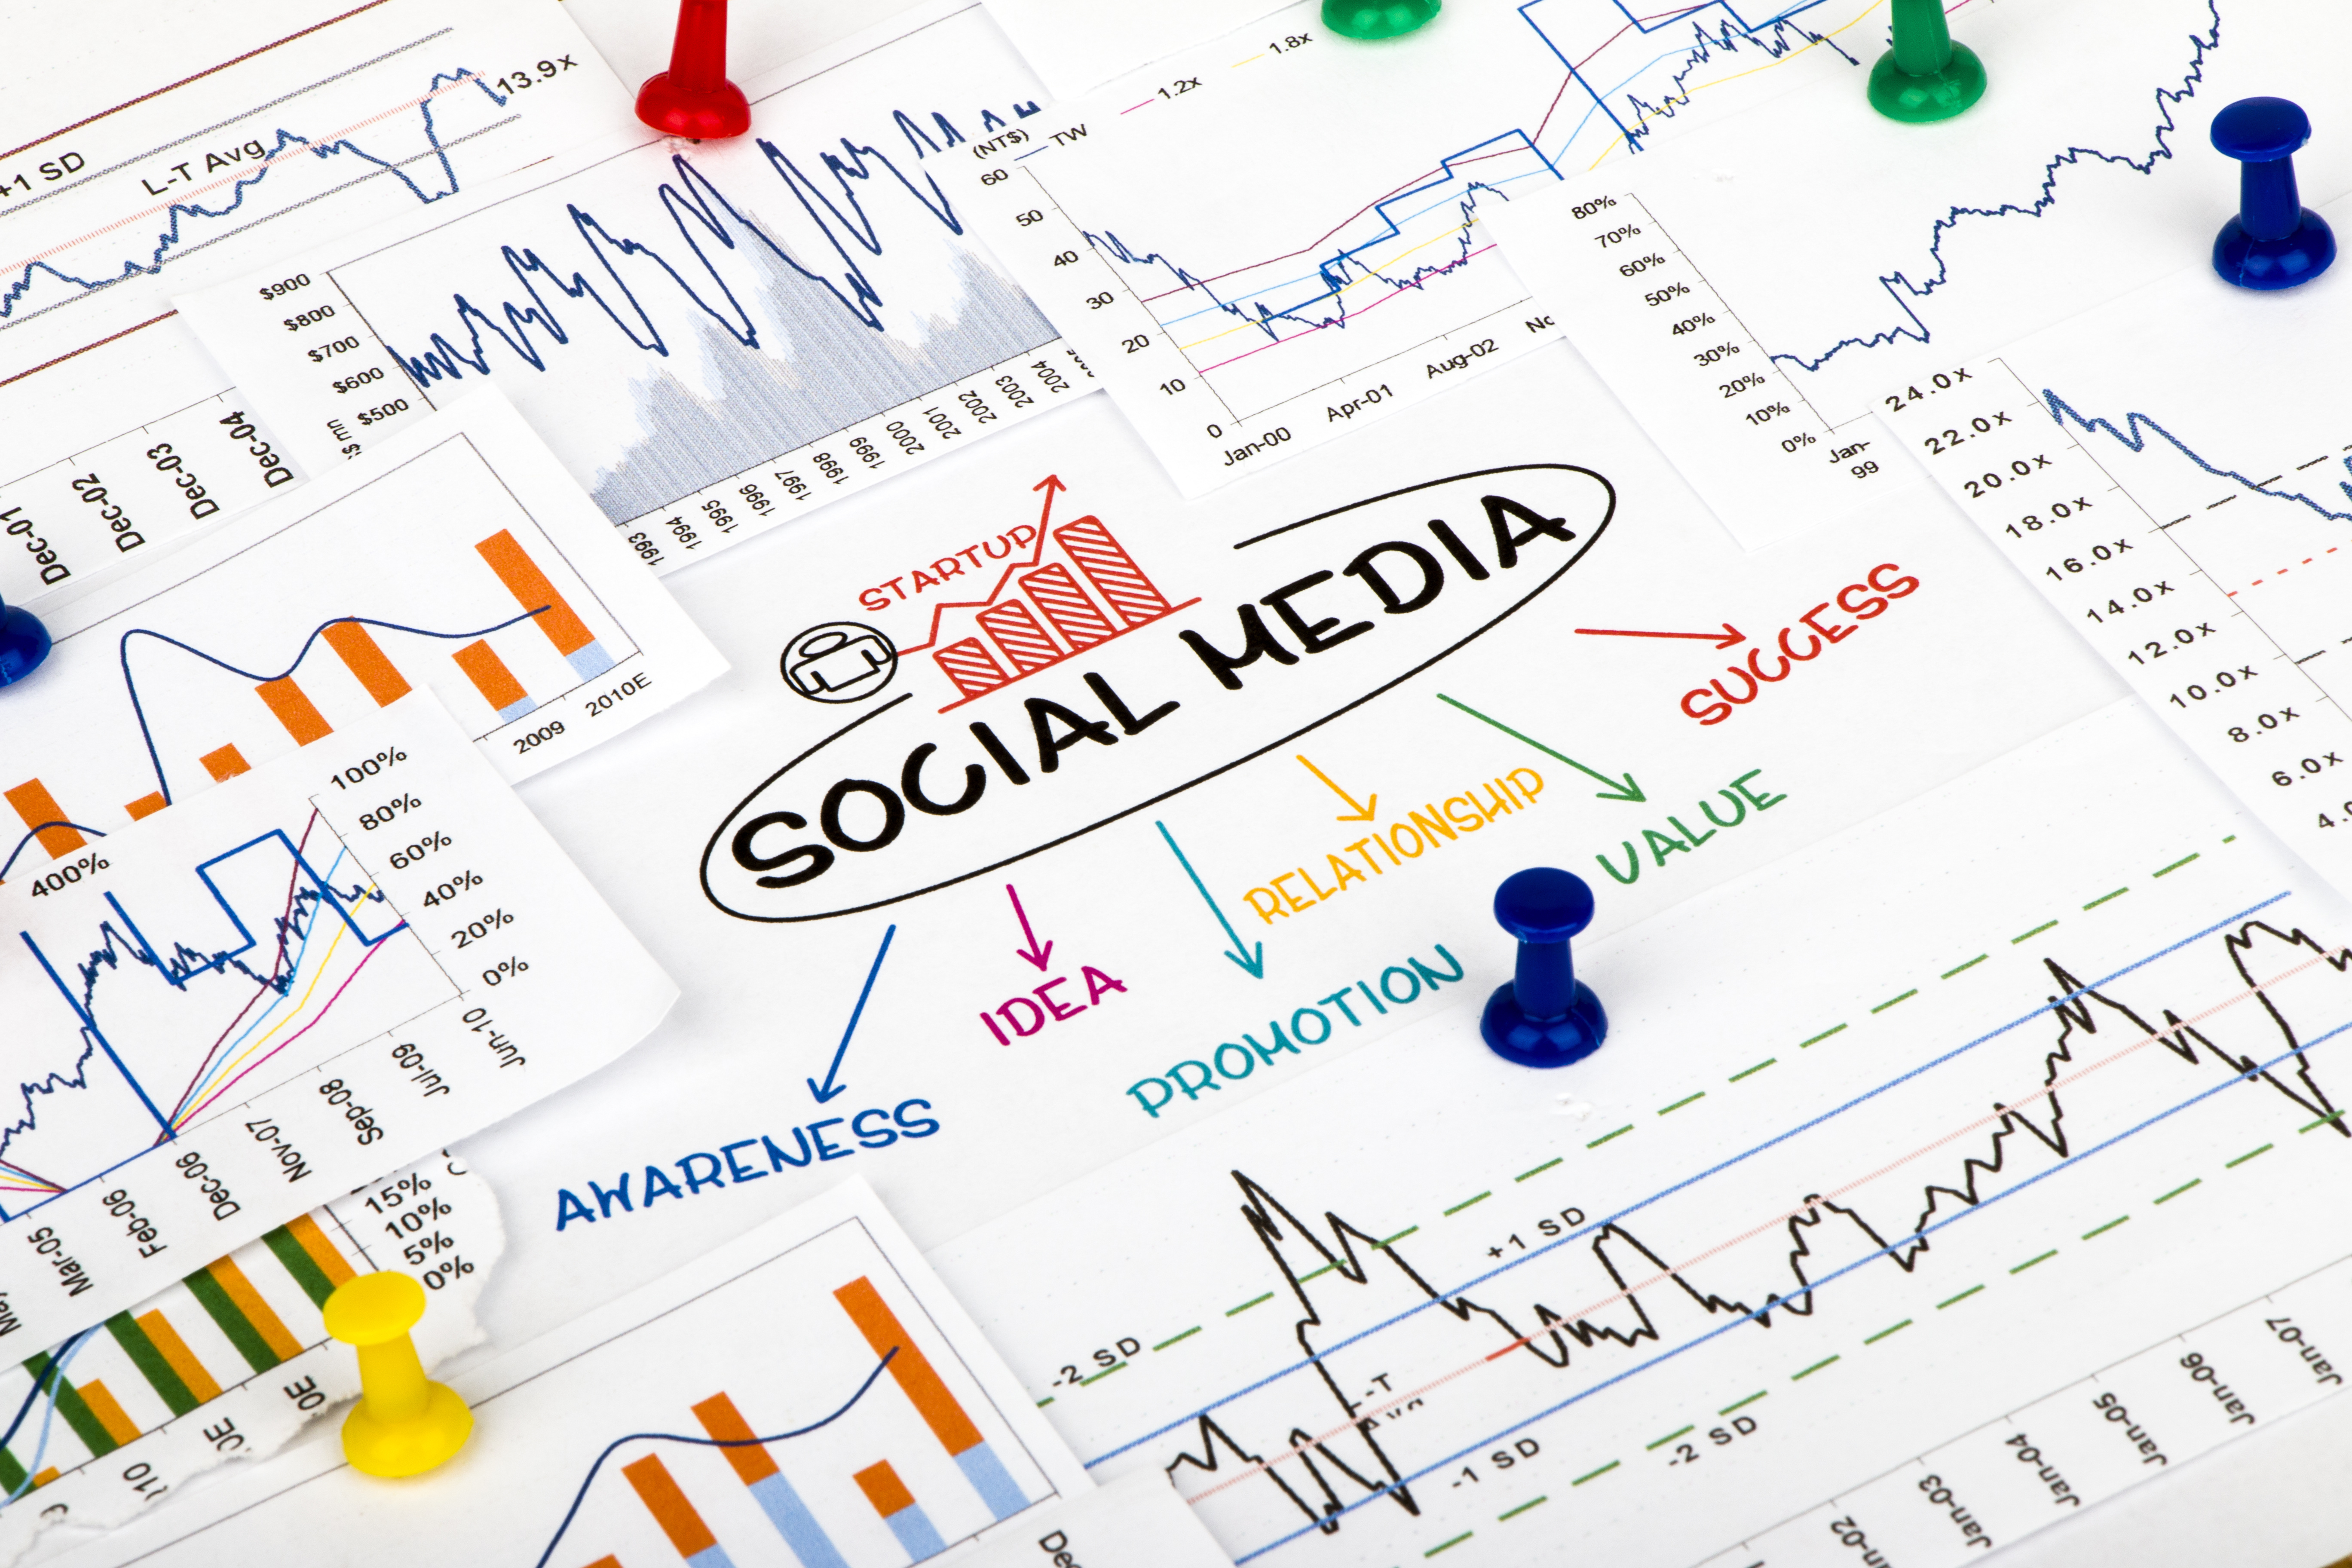 Marketing, Digital Marketing, Social Media Marketing, Data Marketing, Data Analytics, Social Persona